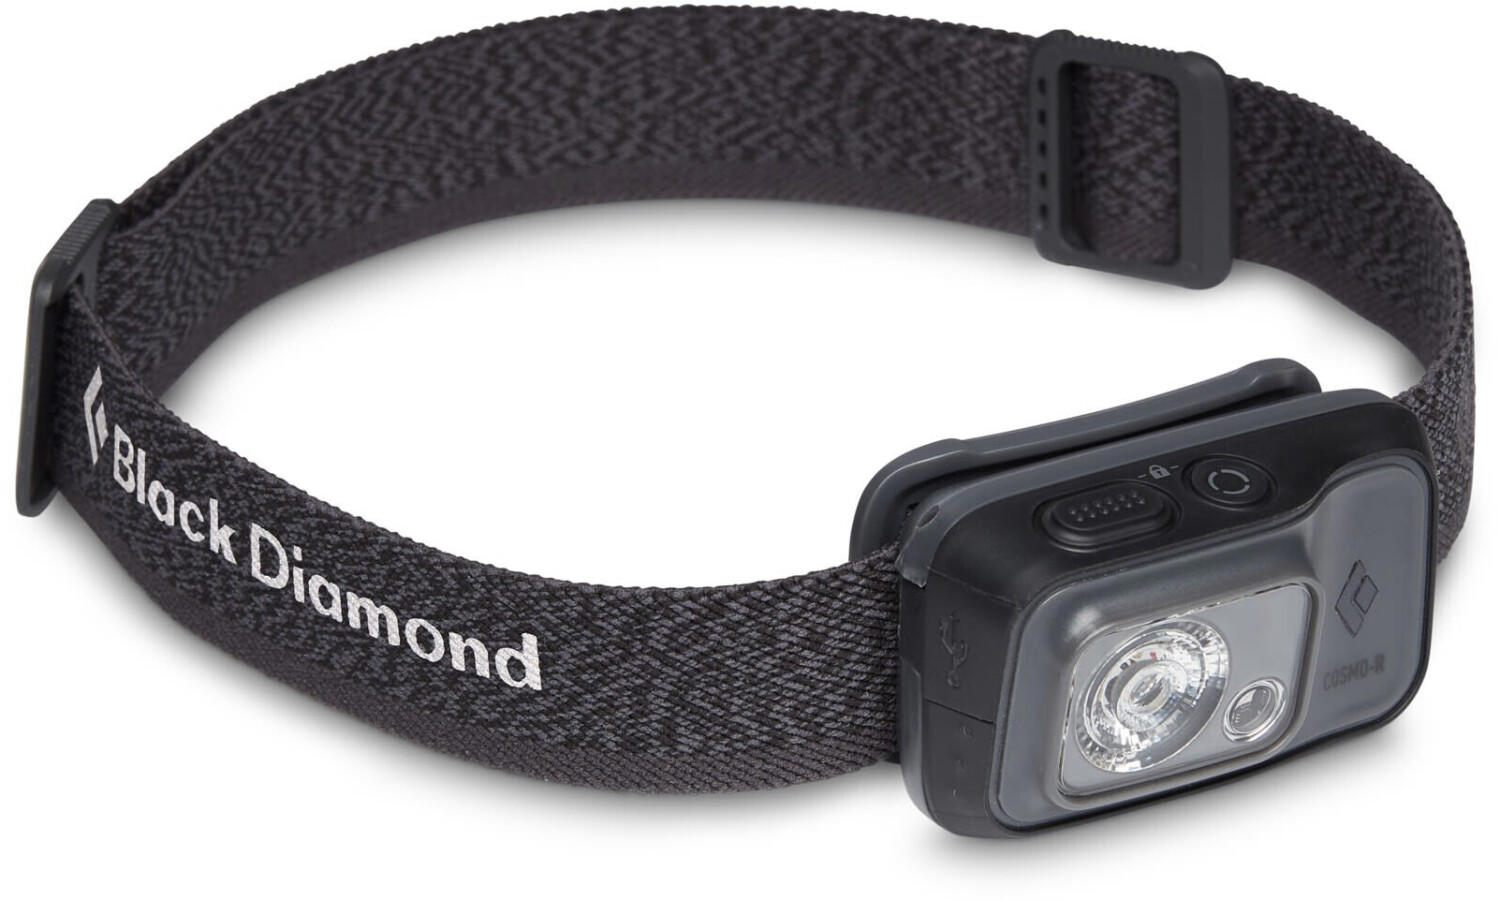 Black Diamond Cosmo 350-R headlamp